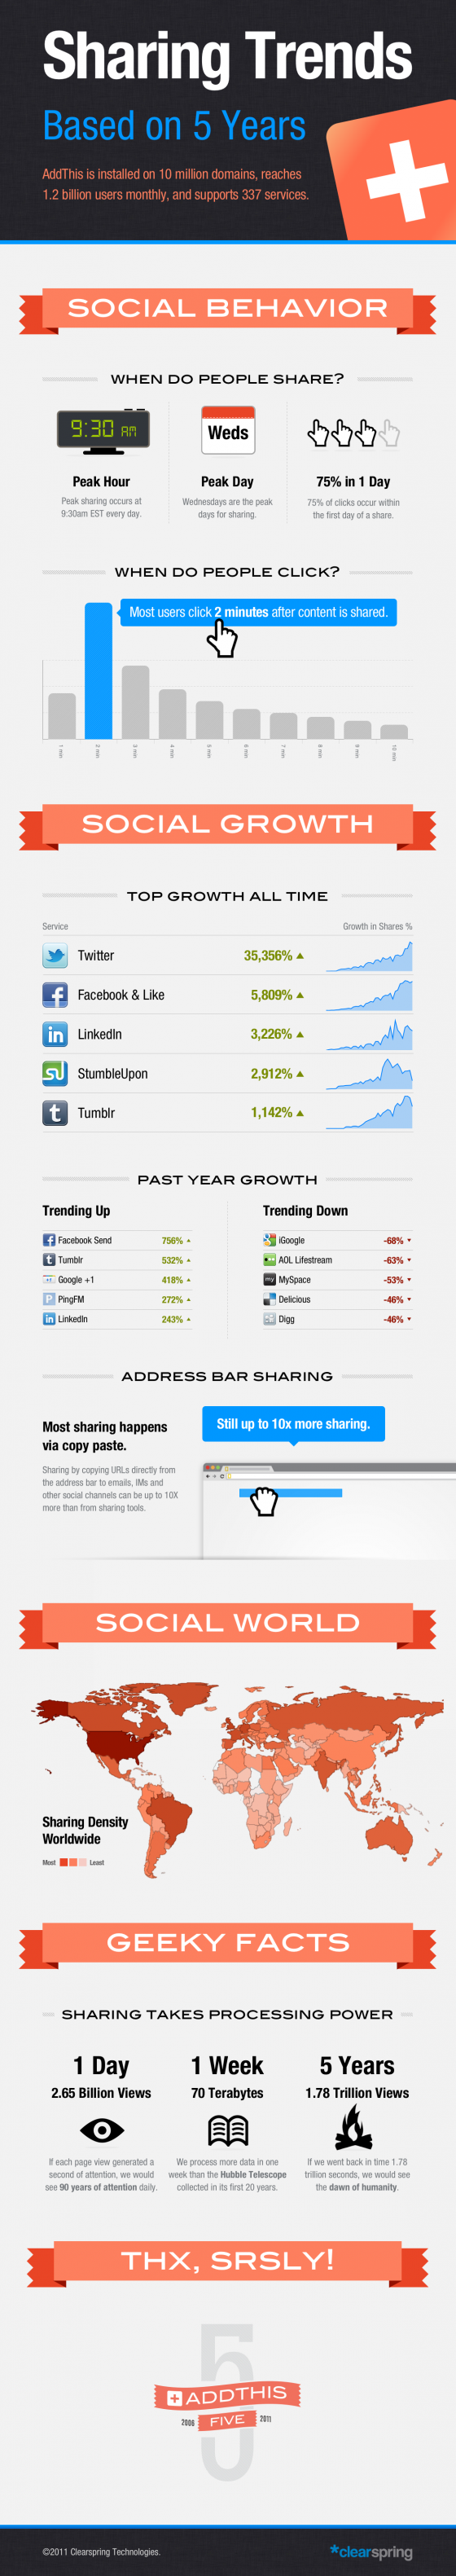 Gli Sharing Trends degli ultimi 5 anni